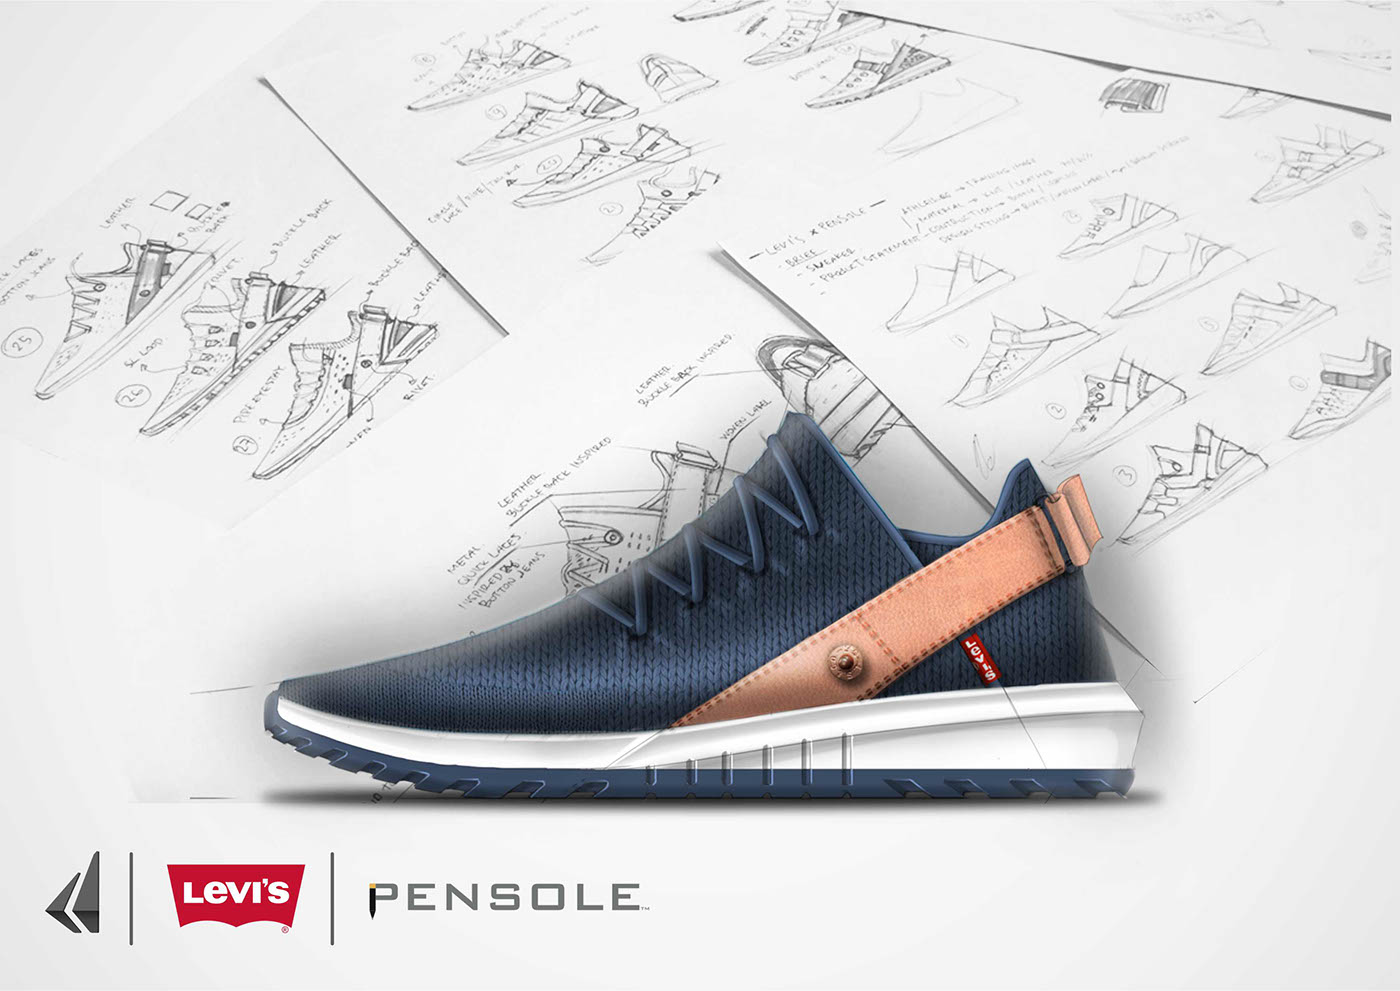 pensole x levis Pensole levis shoes footwear design sneakers concept lifestyle